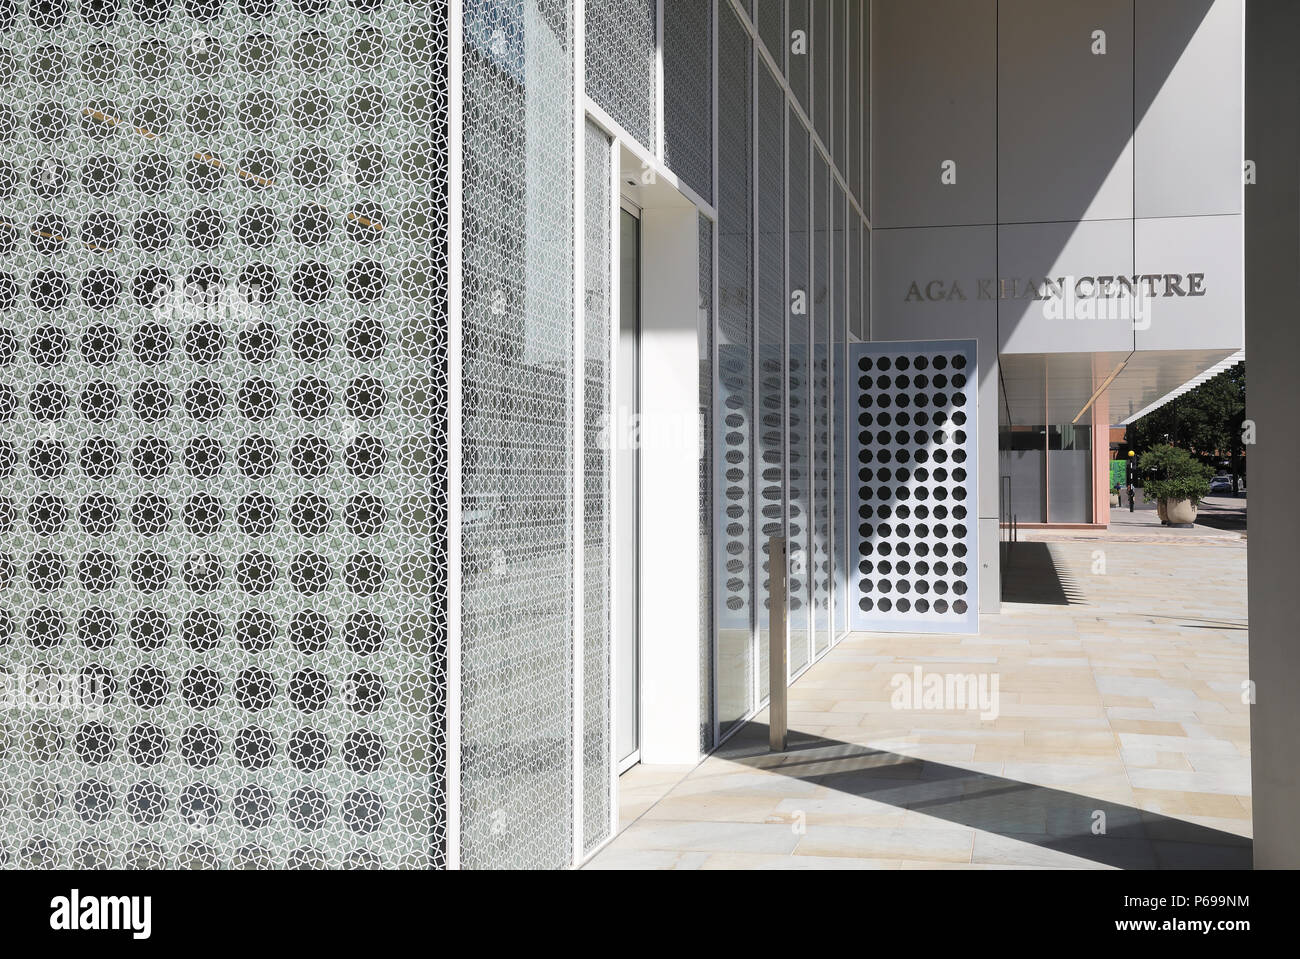 Progettato da Giappone Fumihiko Maki, il nuovo Kings Cross Aga Khan centro mostra le meraviglie del mondo islamico, a Londra, Regno Unito Foto Stock